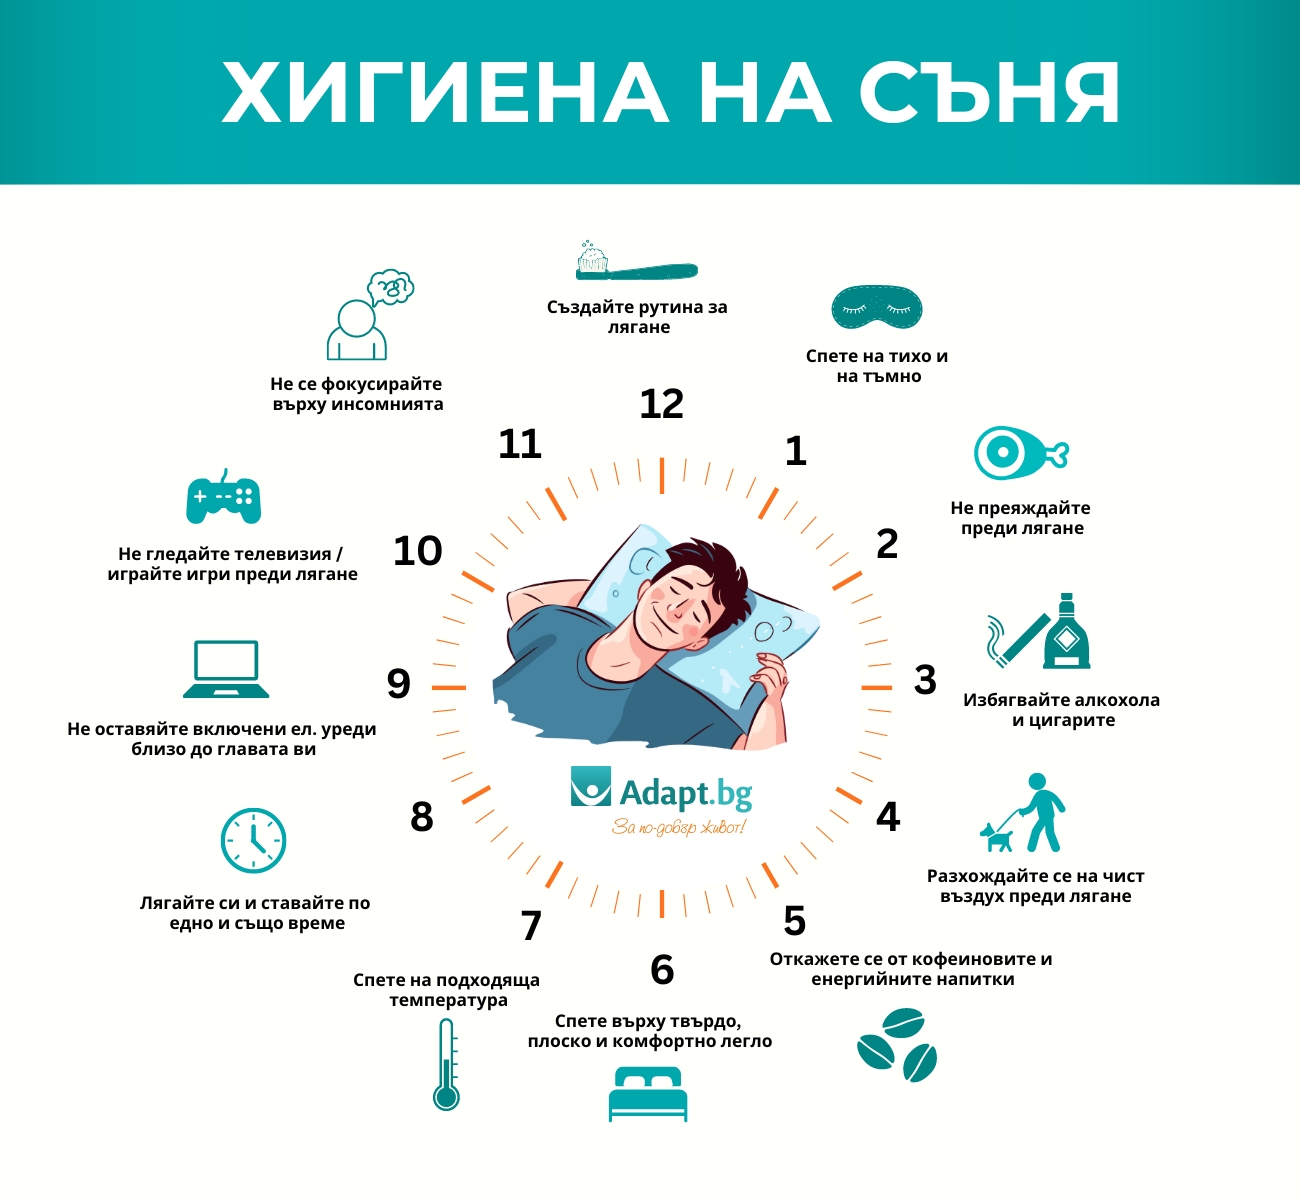 Хигиена на съня - инфографика - Adapt BG 